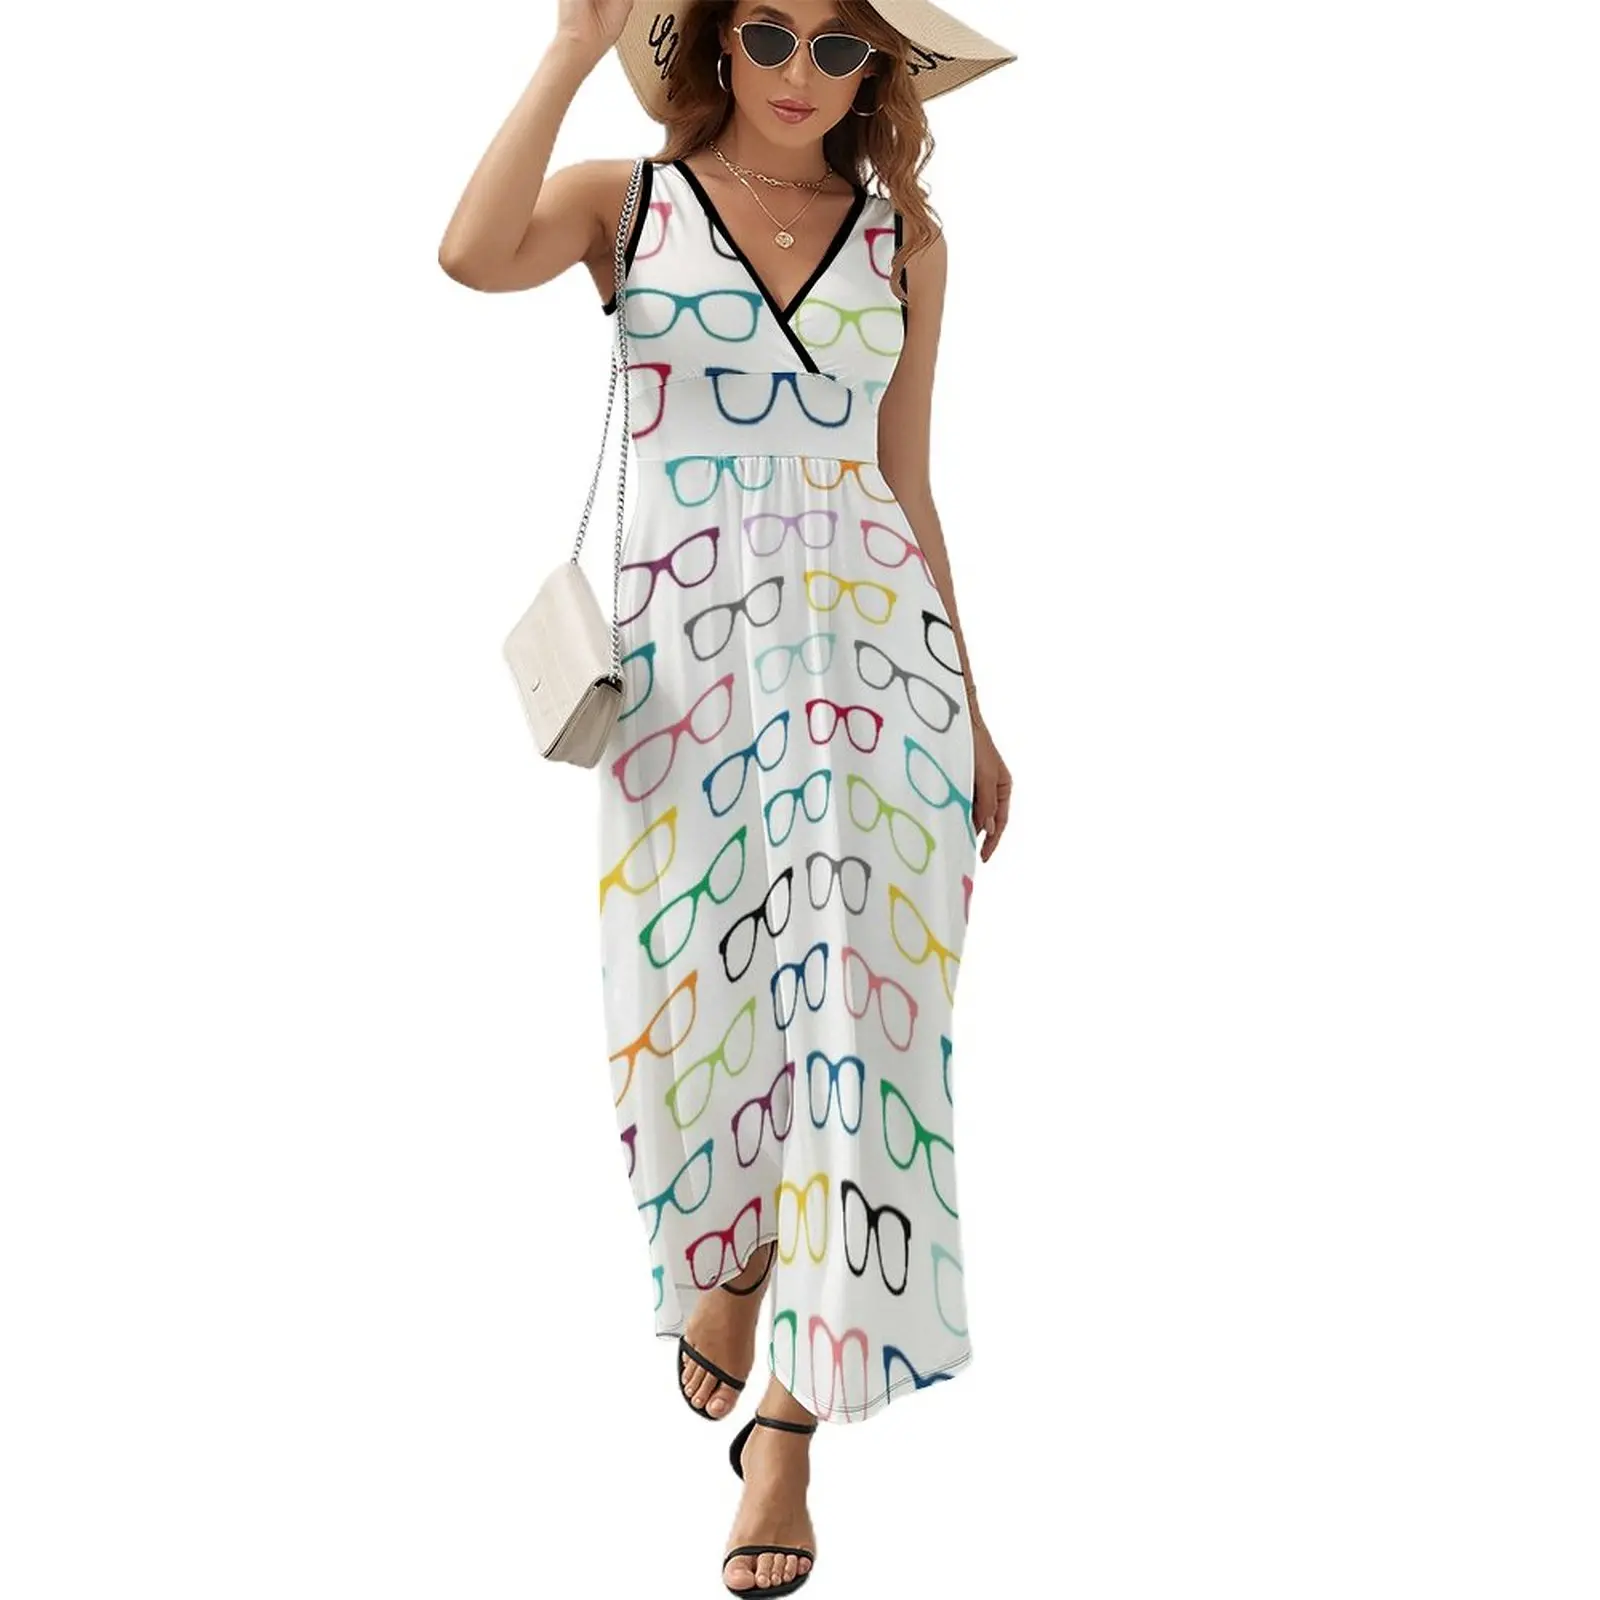 

Hipster Glasses Geek Pattern Sleeveless Dress Women's summer dresses Women's dresses prom dresses beach dress